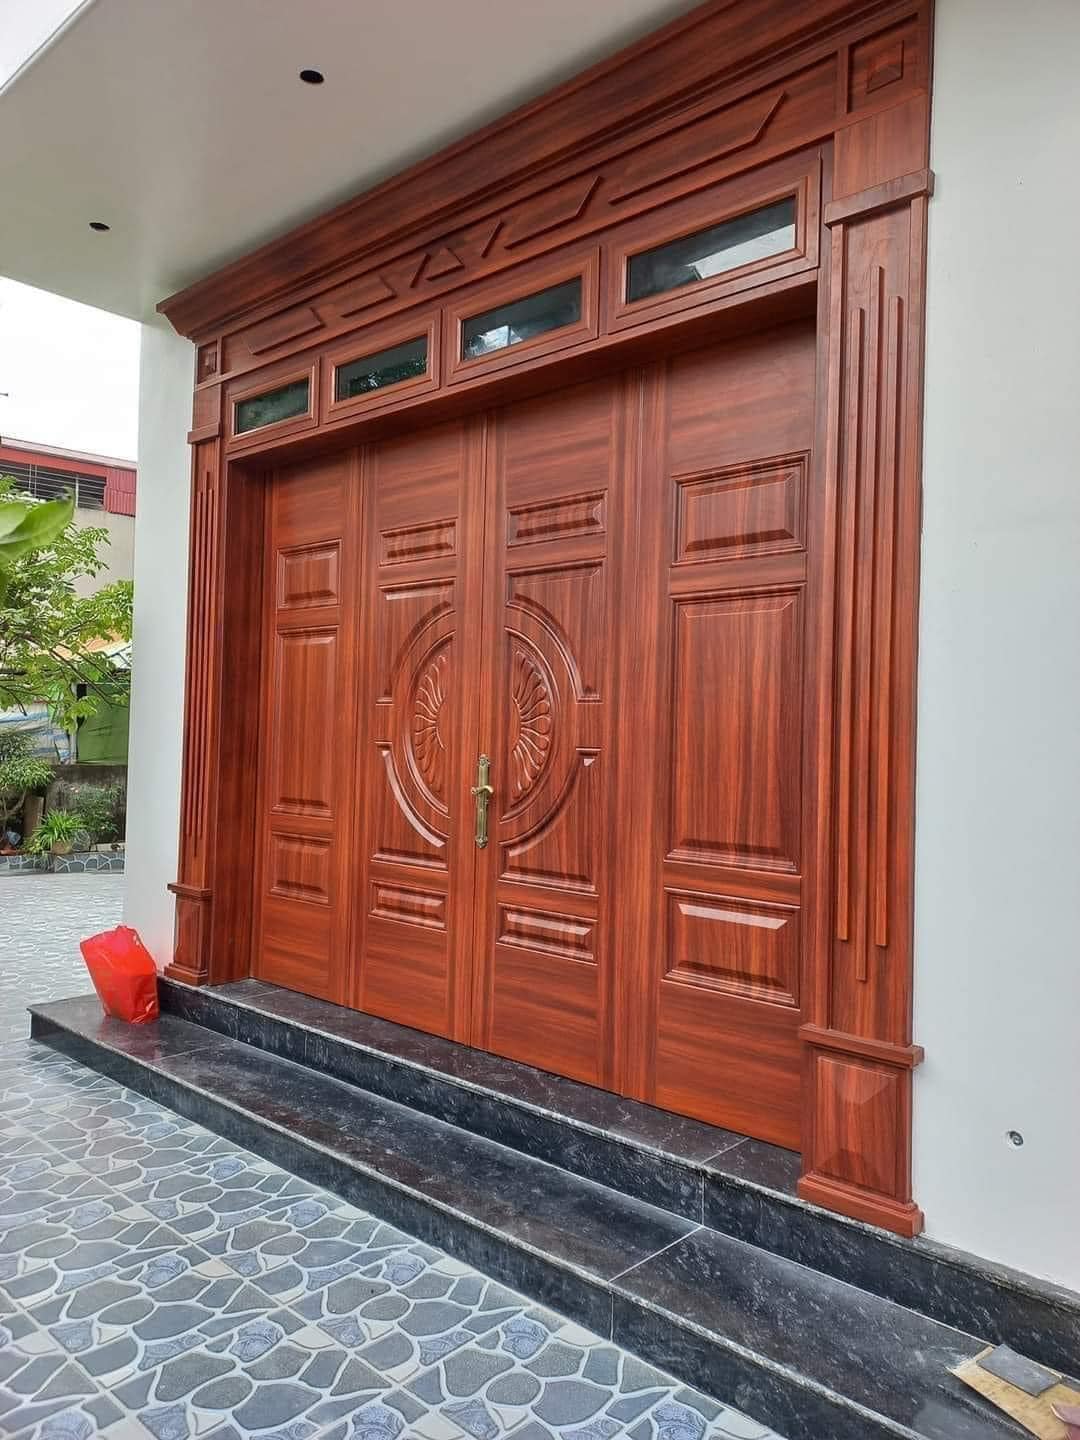 giá cửa thép vân gỗ tại Bình Thuận cửa giá rẻ, đẹp và siêu bền